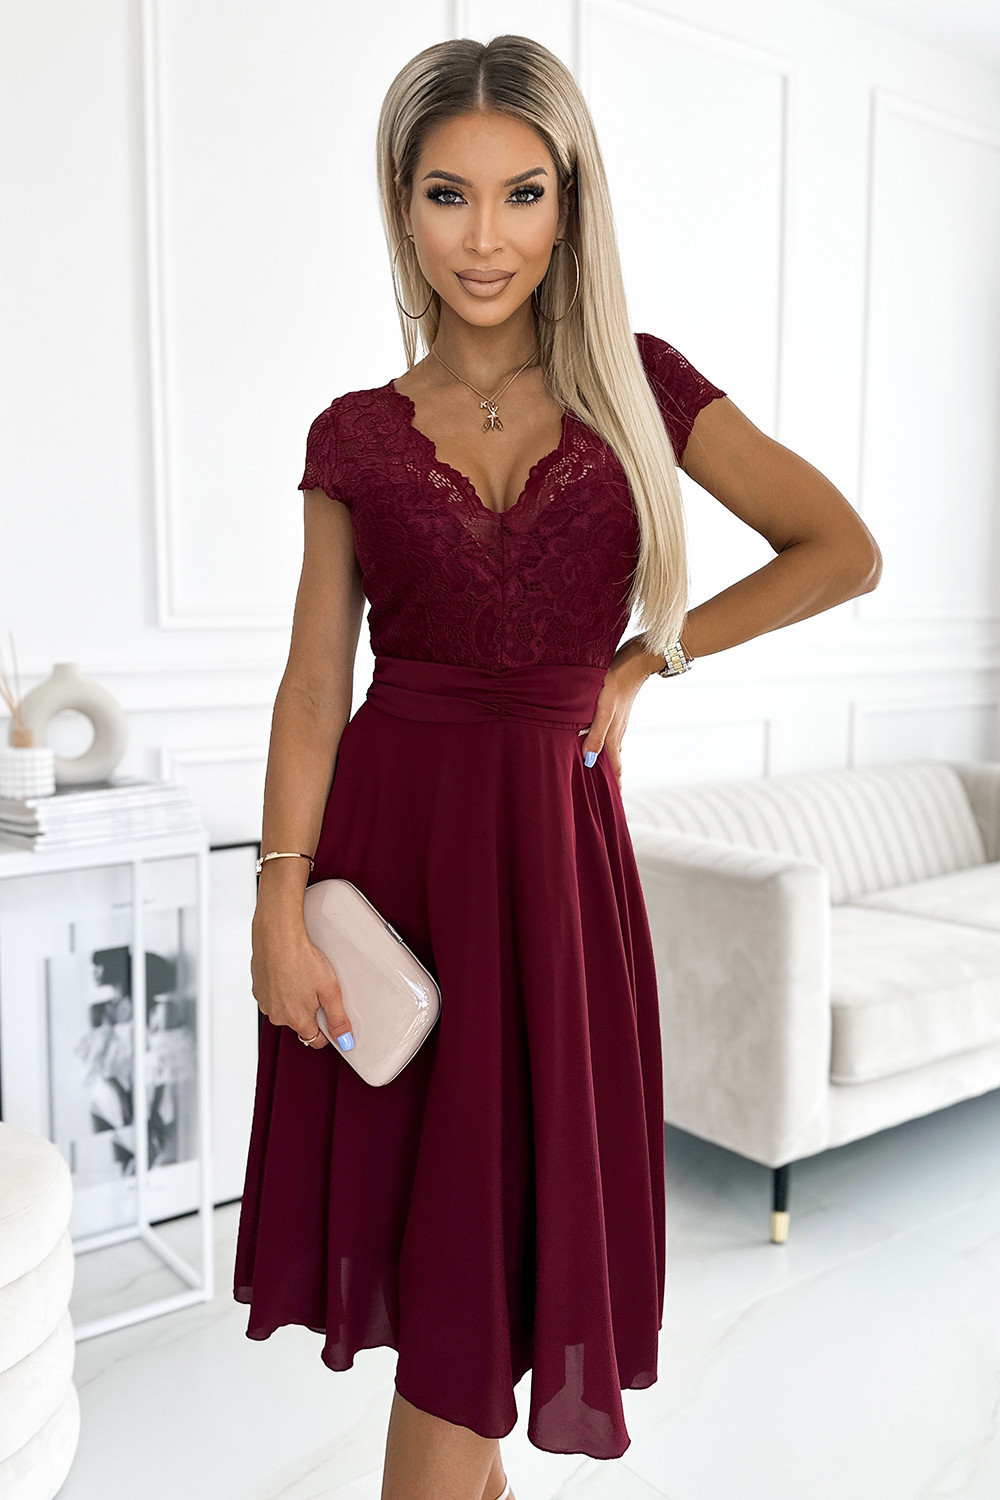 LINDA - Dámské šifonové šaty ve vínové bordó barvě s krajkovým výstřihem 381-5 M